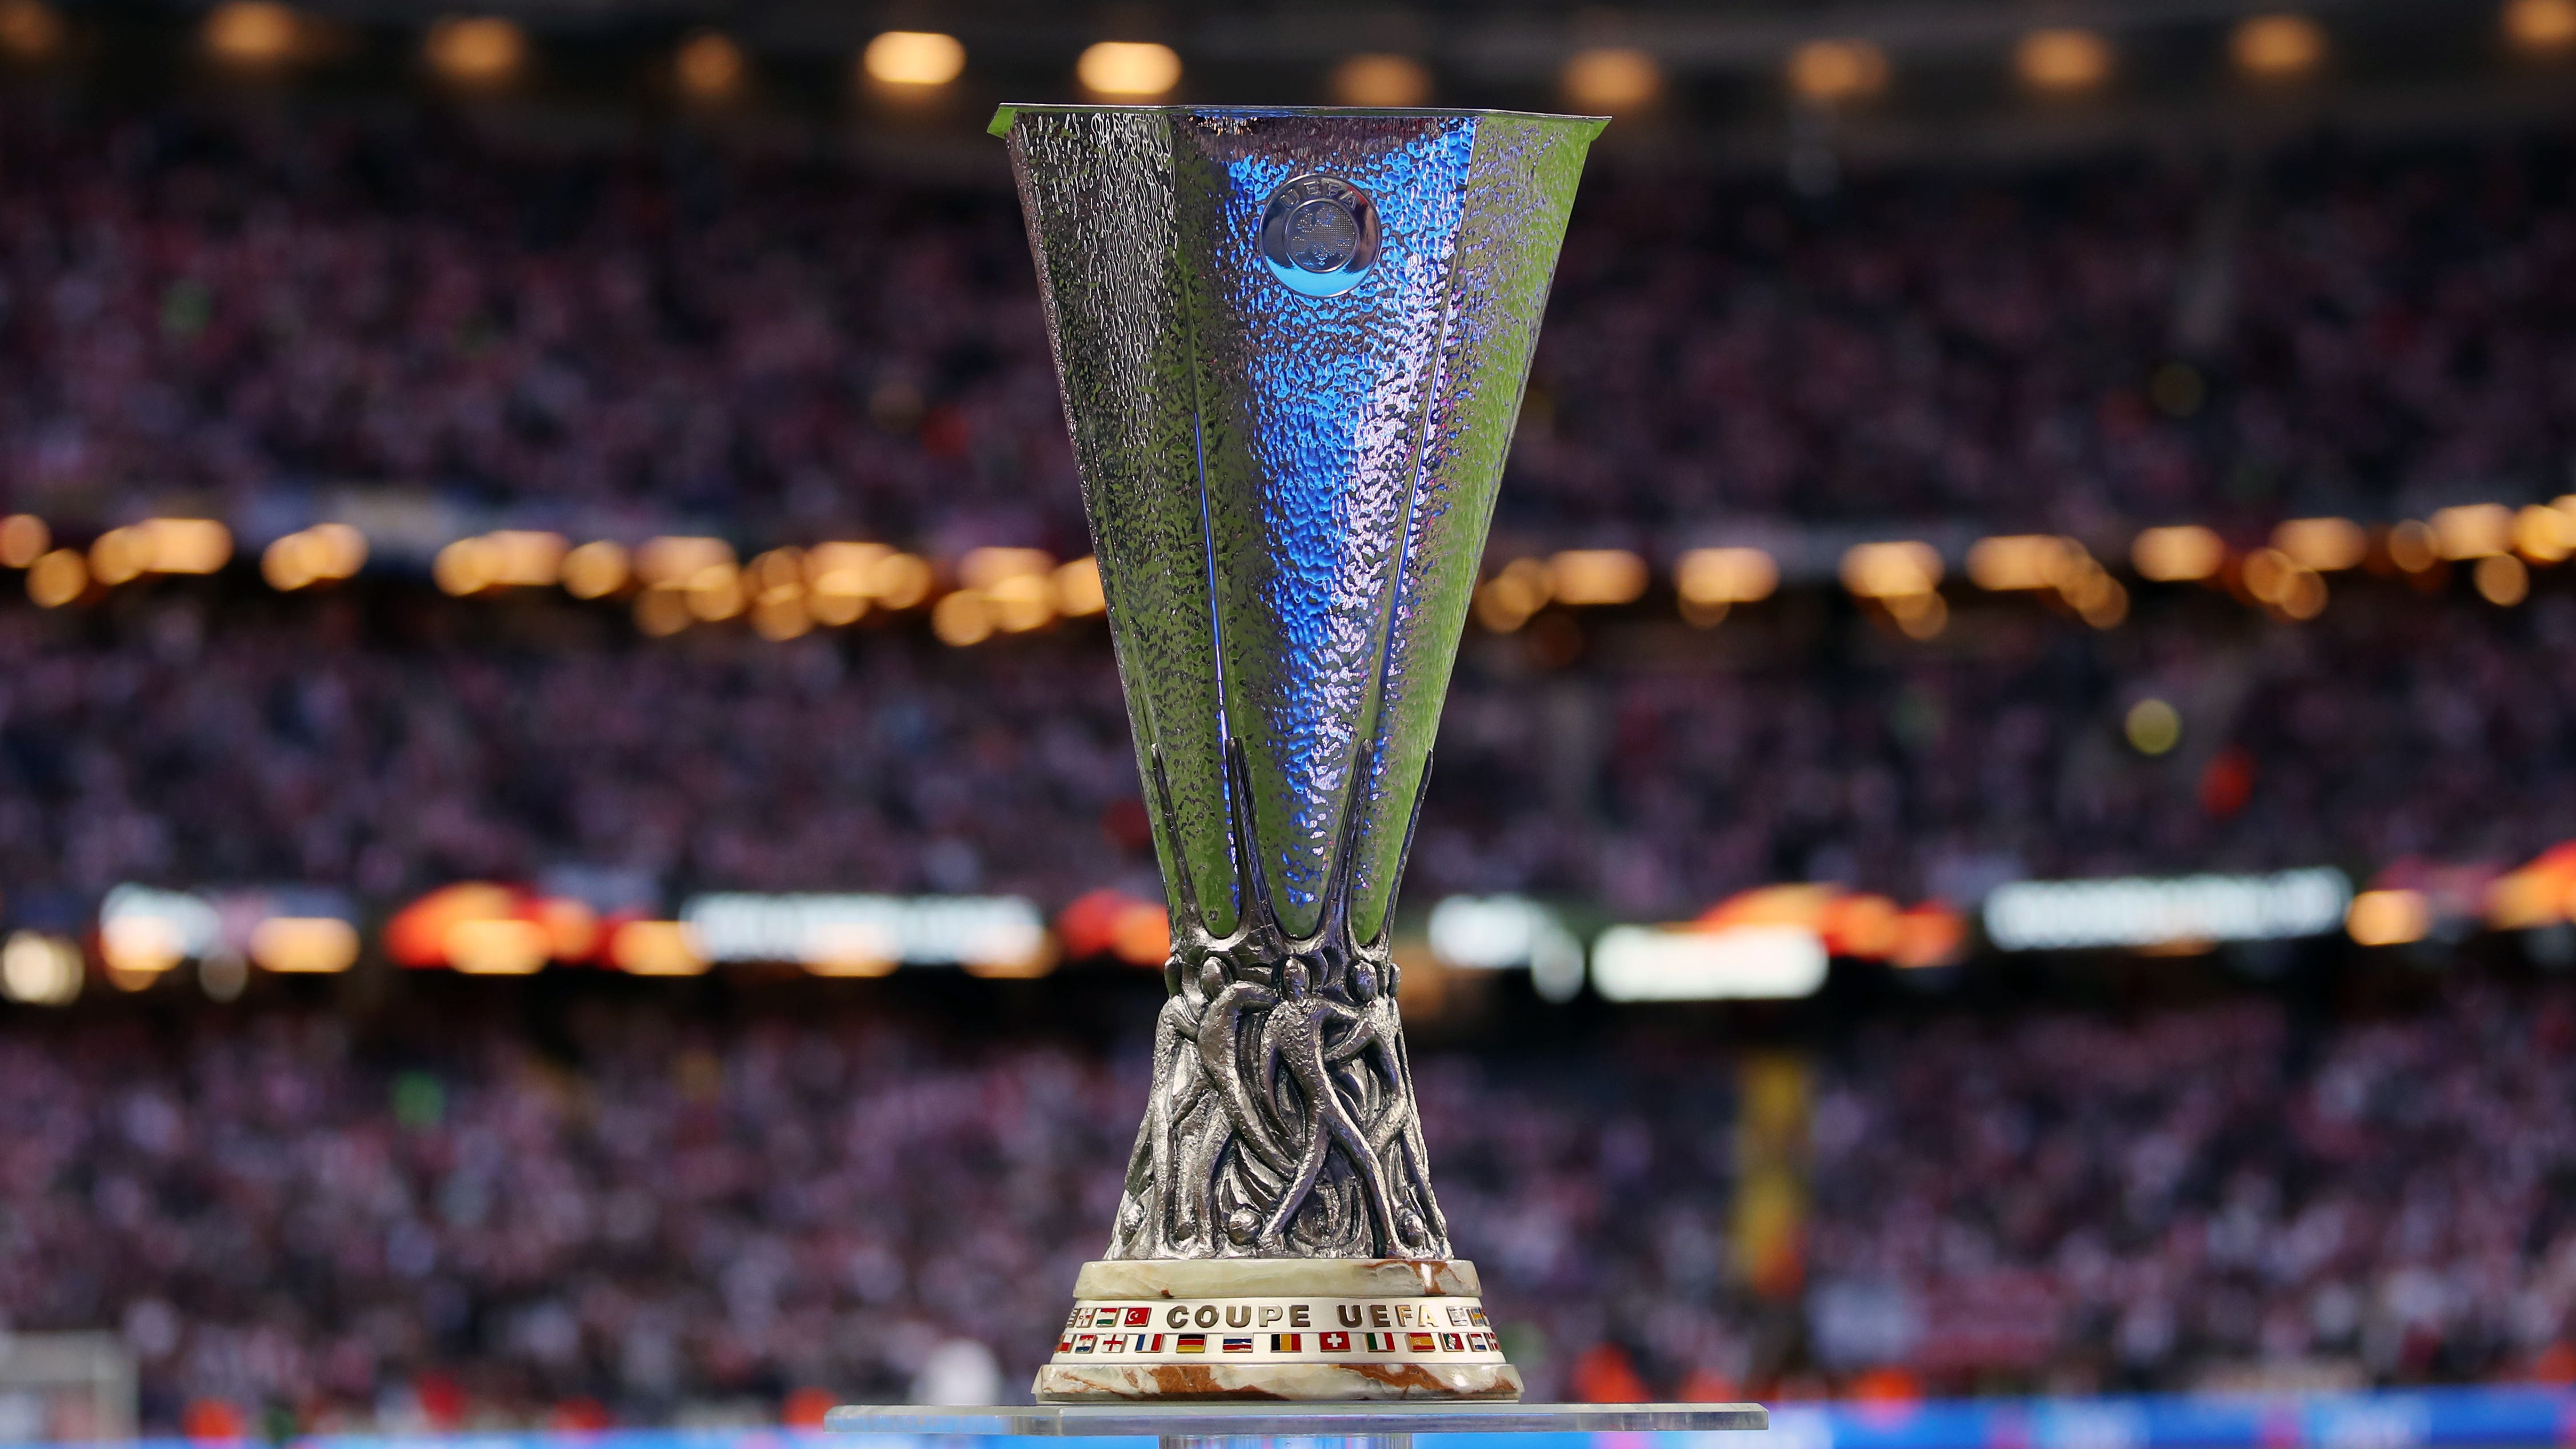 Лига кубок уефа. UEFA Europa League. UEFA Europa League Cup. UEFA Europa League Trophy. UEFA Europa League Final.